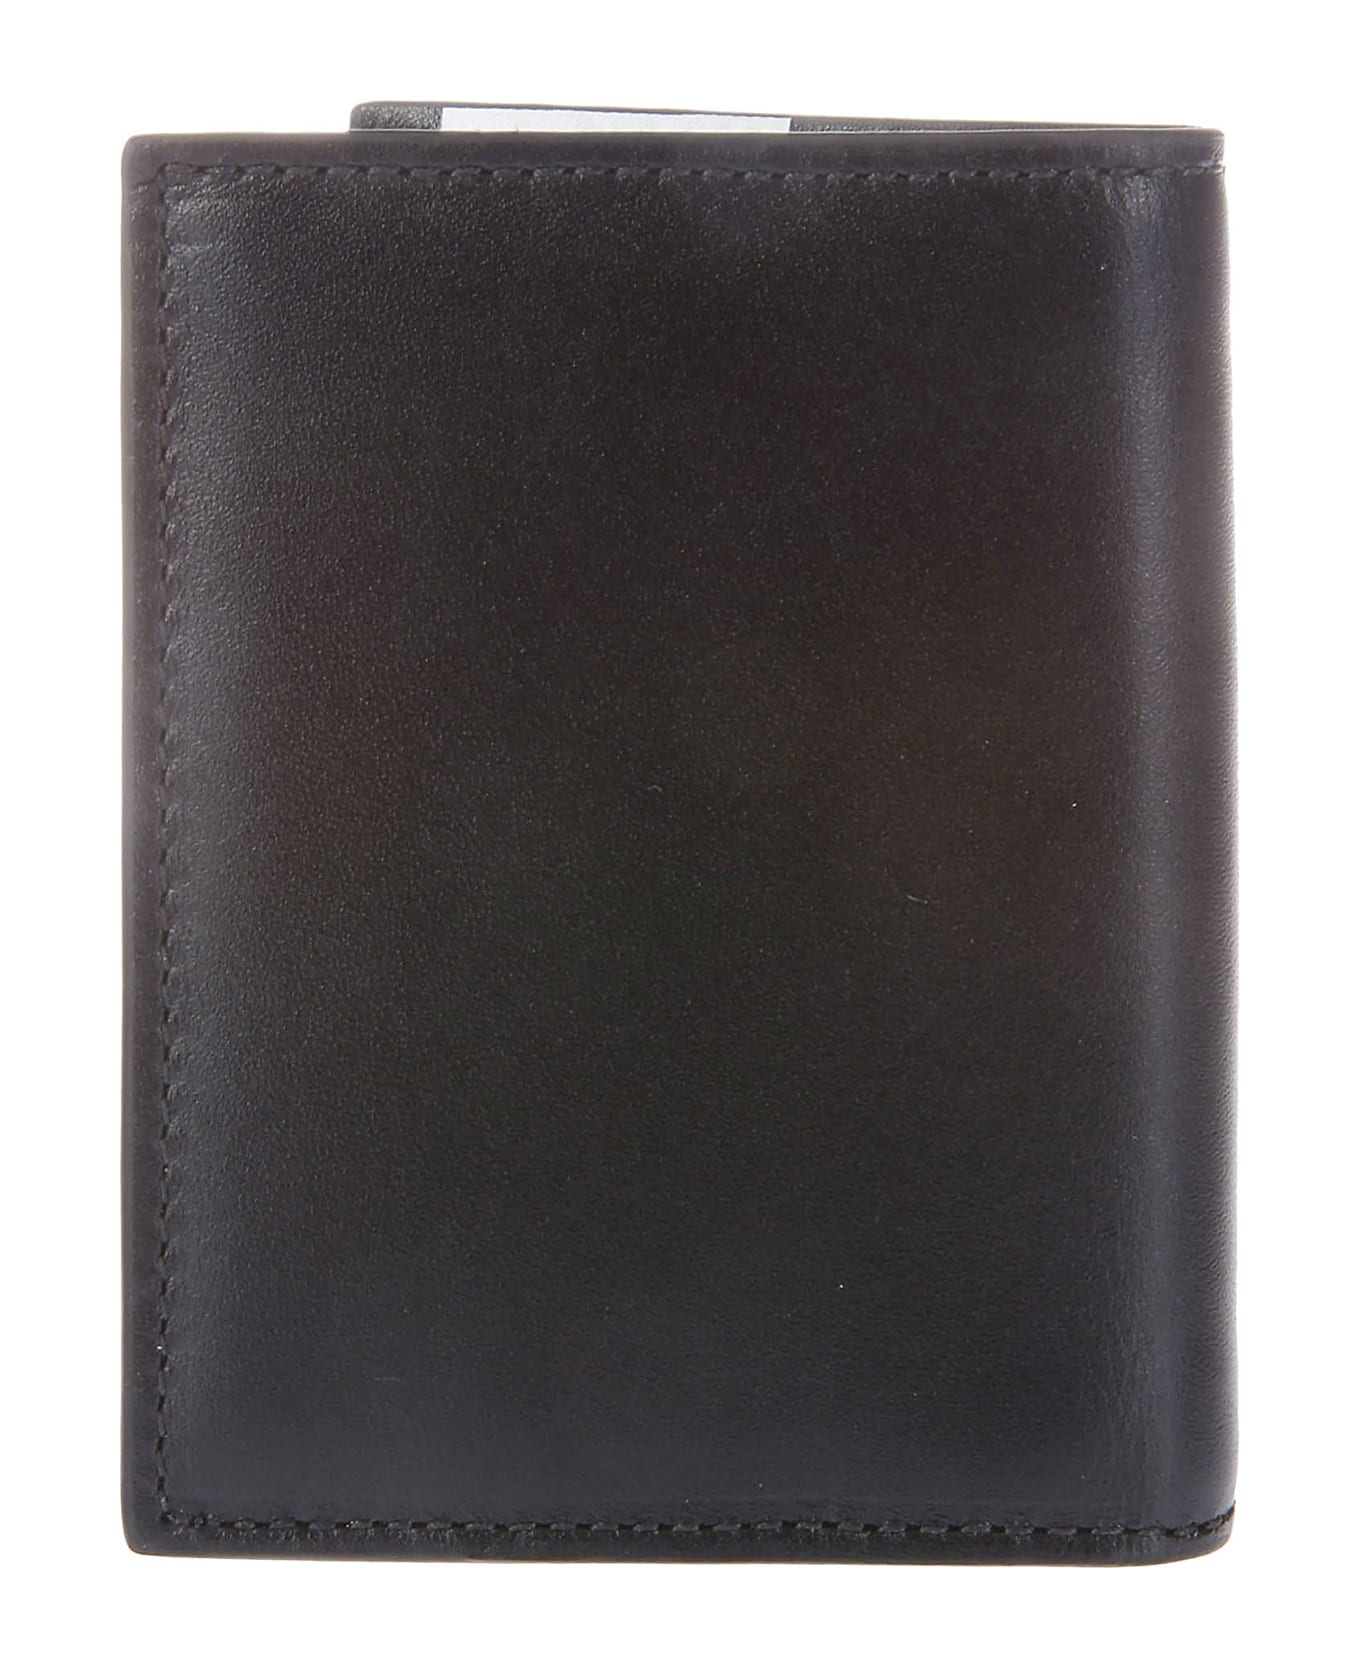 Comme des Garçons Wallet Classic Print - CHECK PRINT 財布